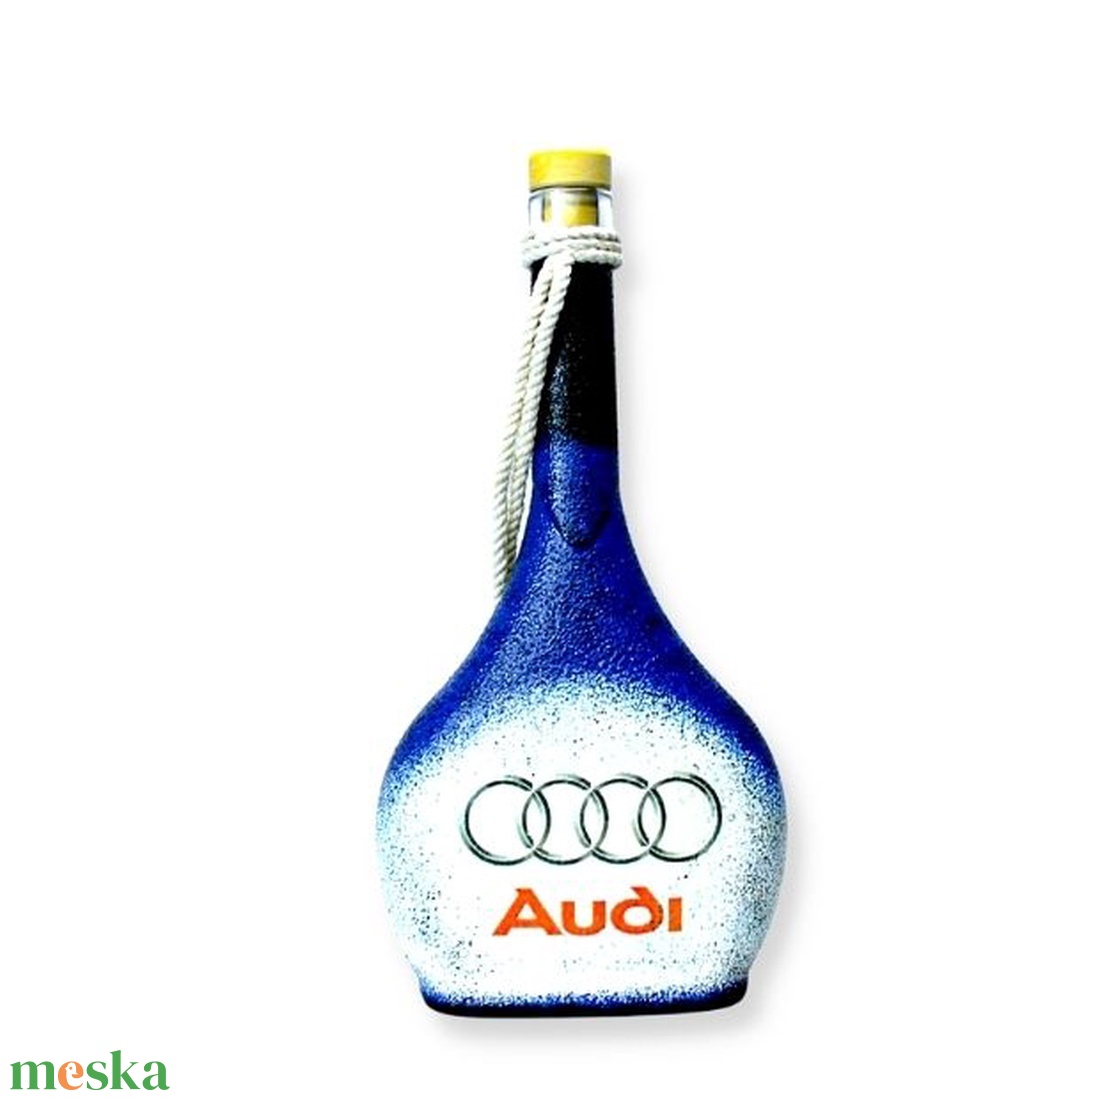 Audi italos üveg ; Audi rajongóknak - otthon & lakás - dekoráció - asztal és polc dekoráció - díszüveg - Meska.hu